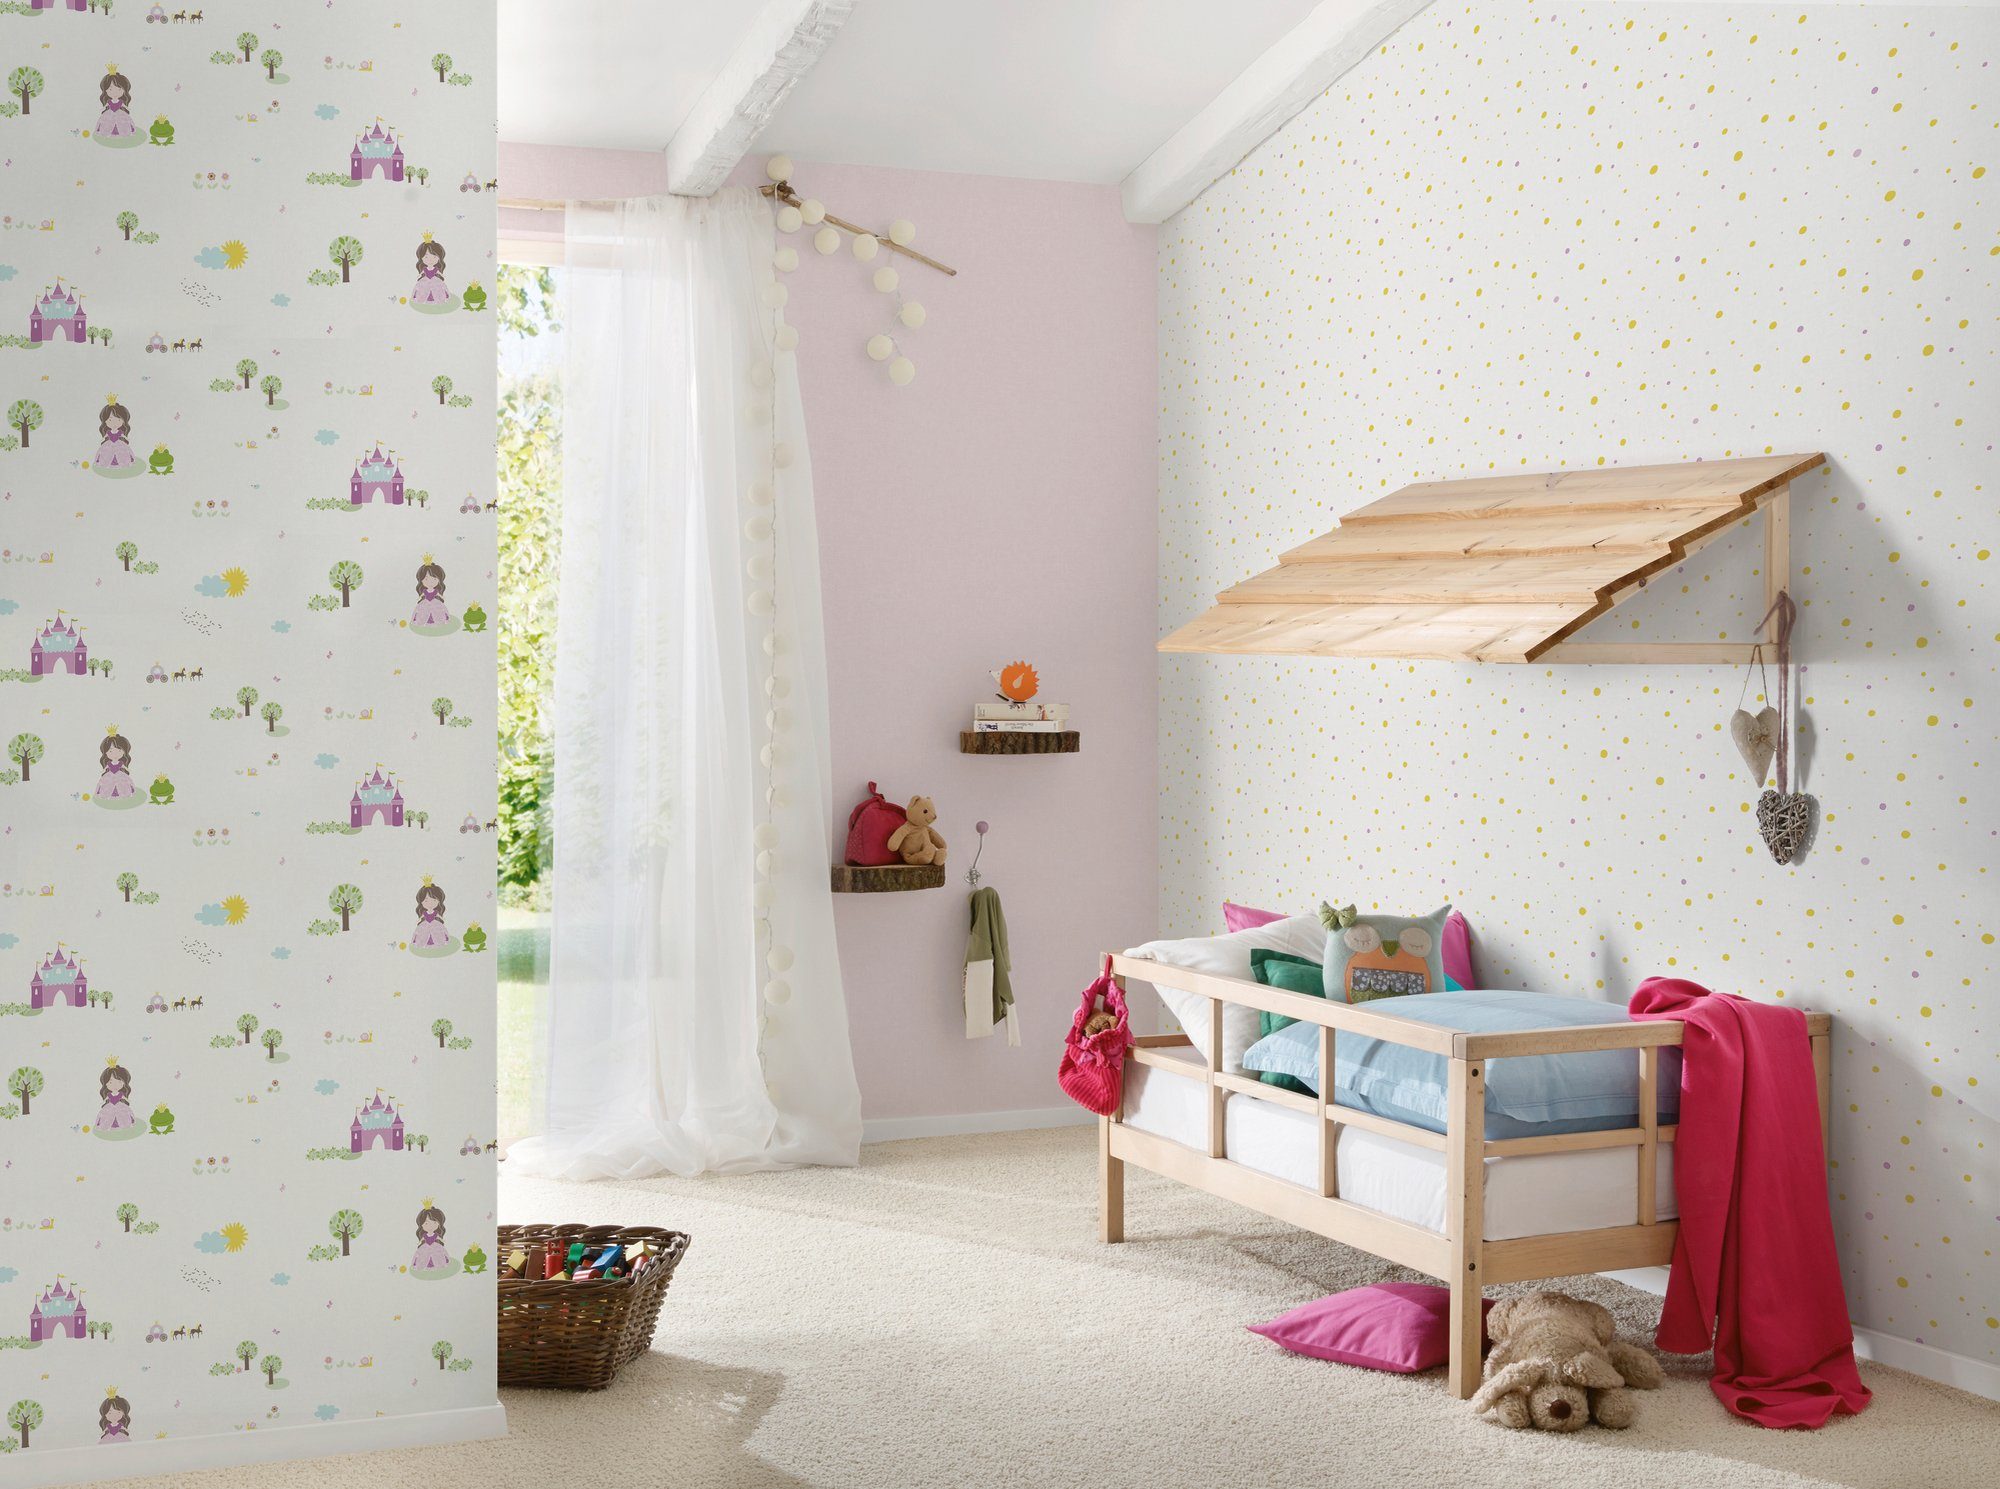 A.S. Création living walls Vliestapete weiß/braun/rosa Metallic Tapete Kinderzimmer gepunktet, glatt, Punkte Little Stars